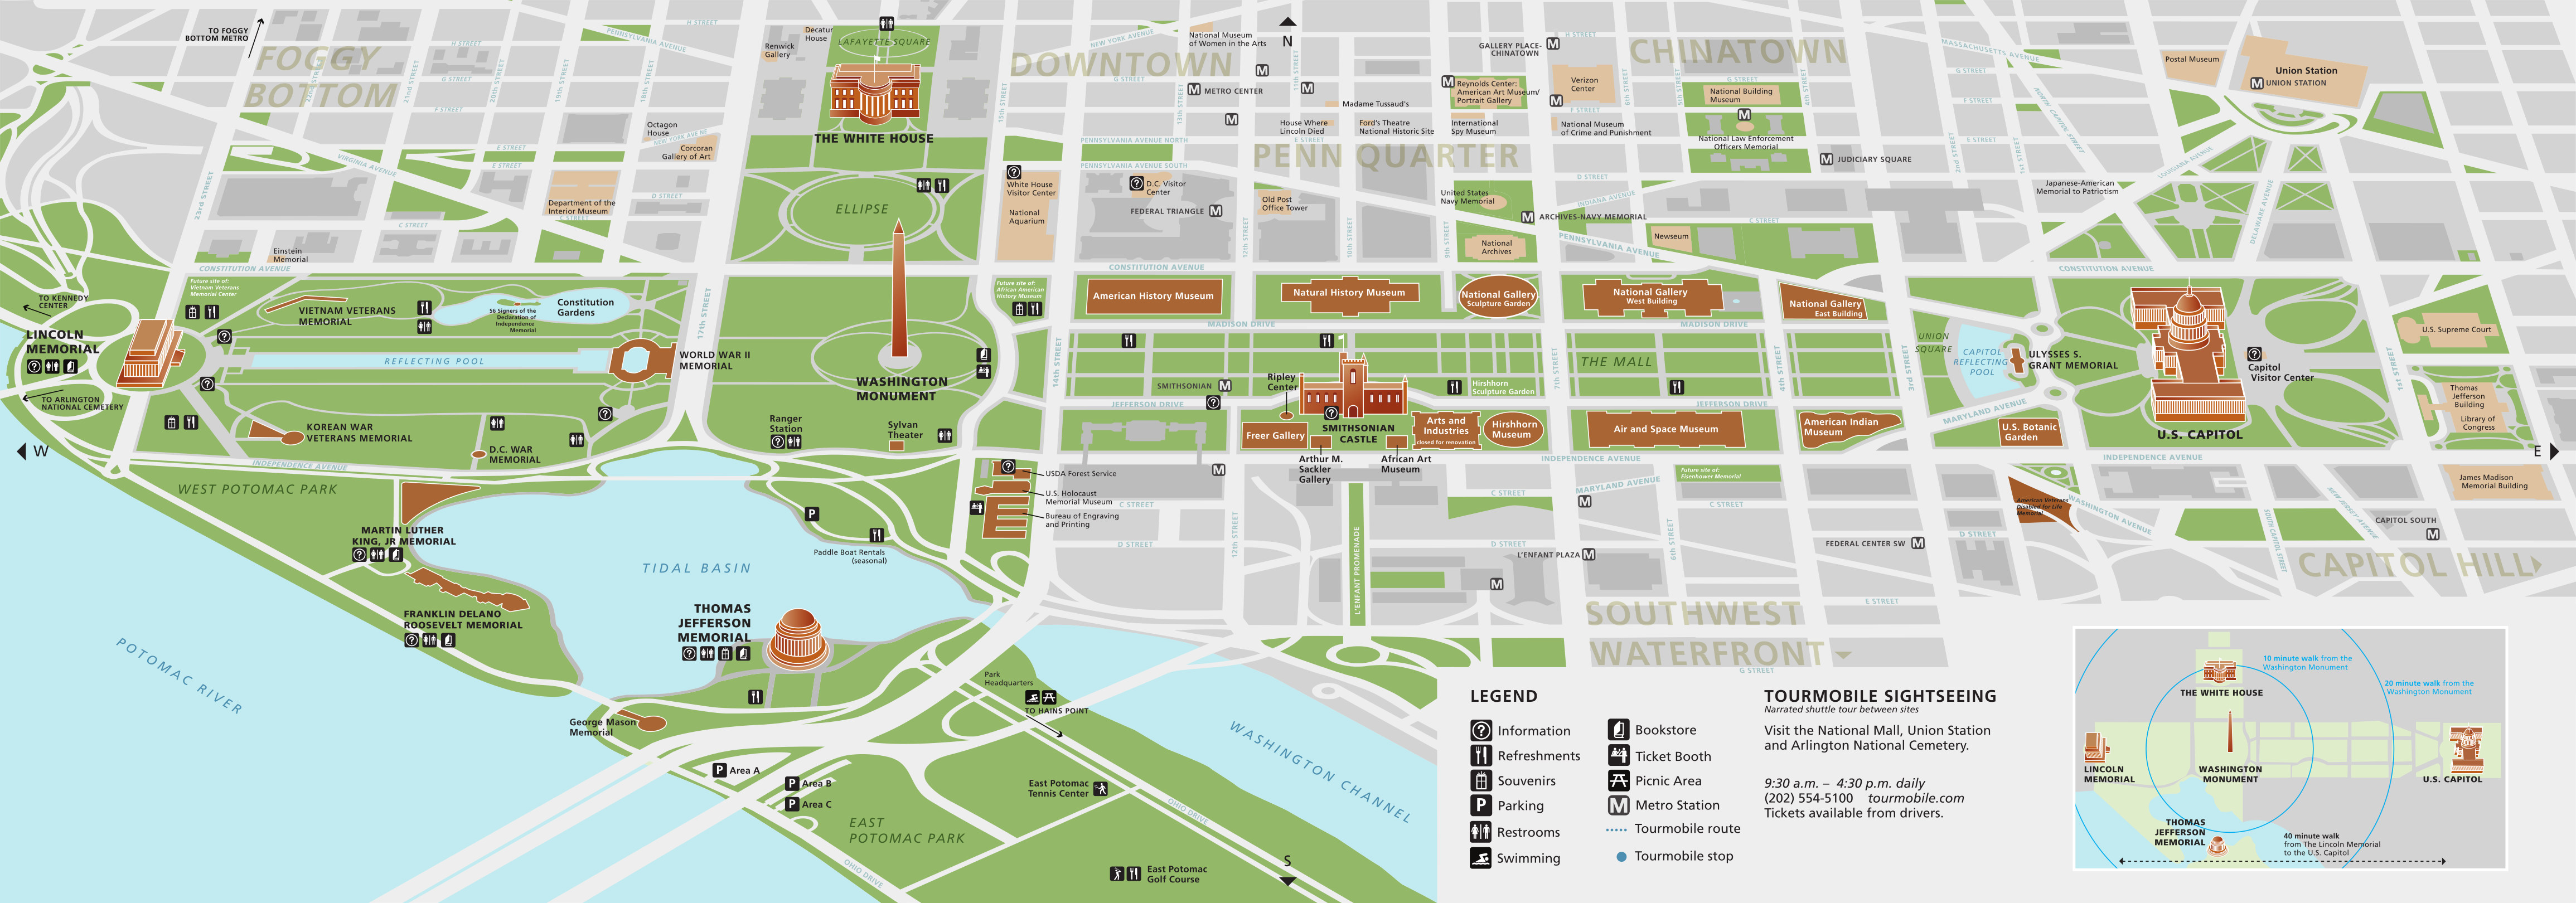 Map National Mall Washington Dc Printable - Printable Templates